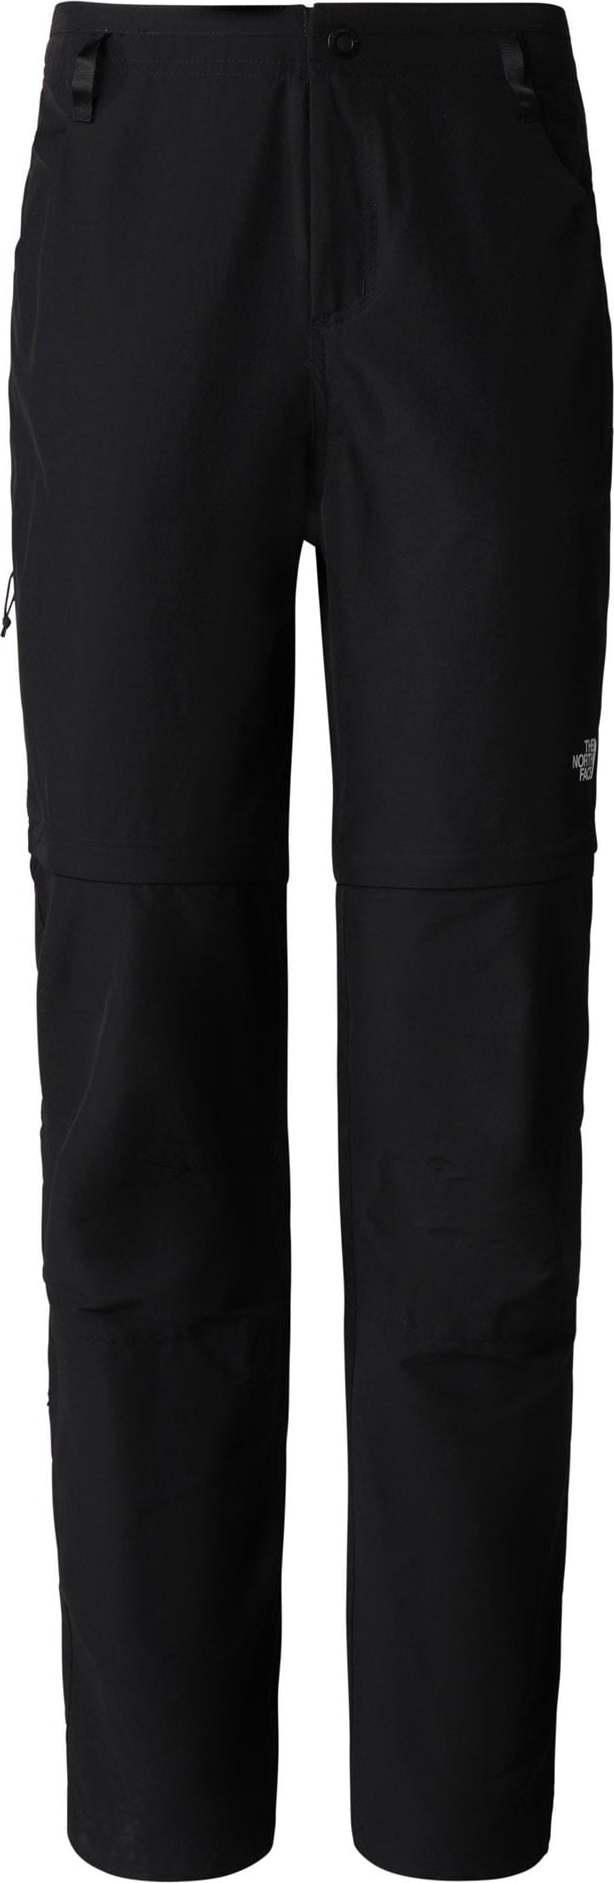 Outdoorové kalhoty The North Face černá / bílá